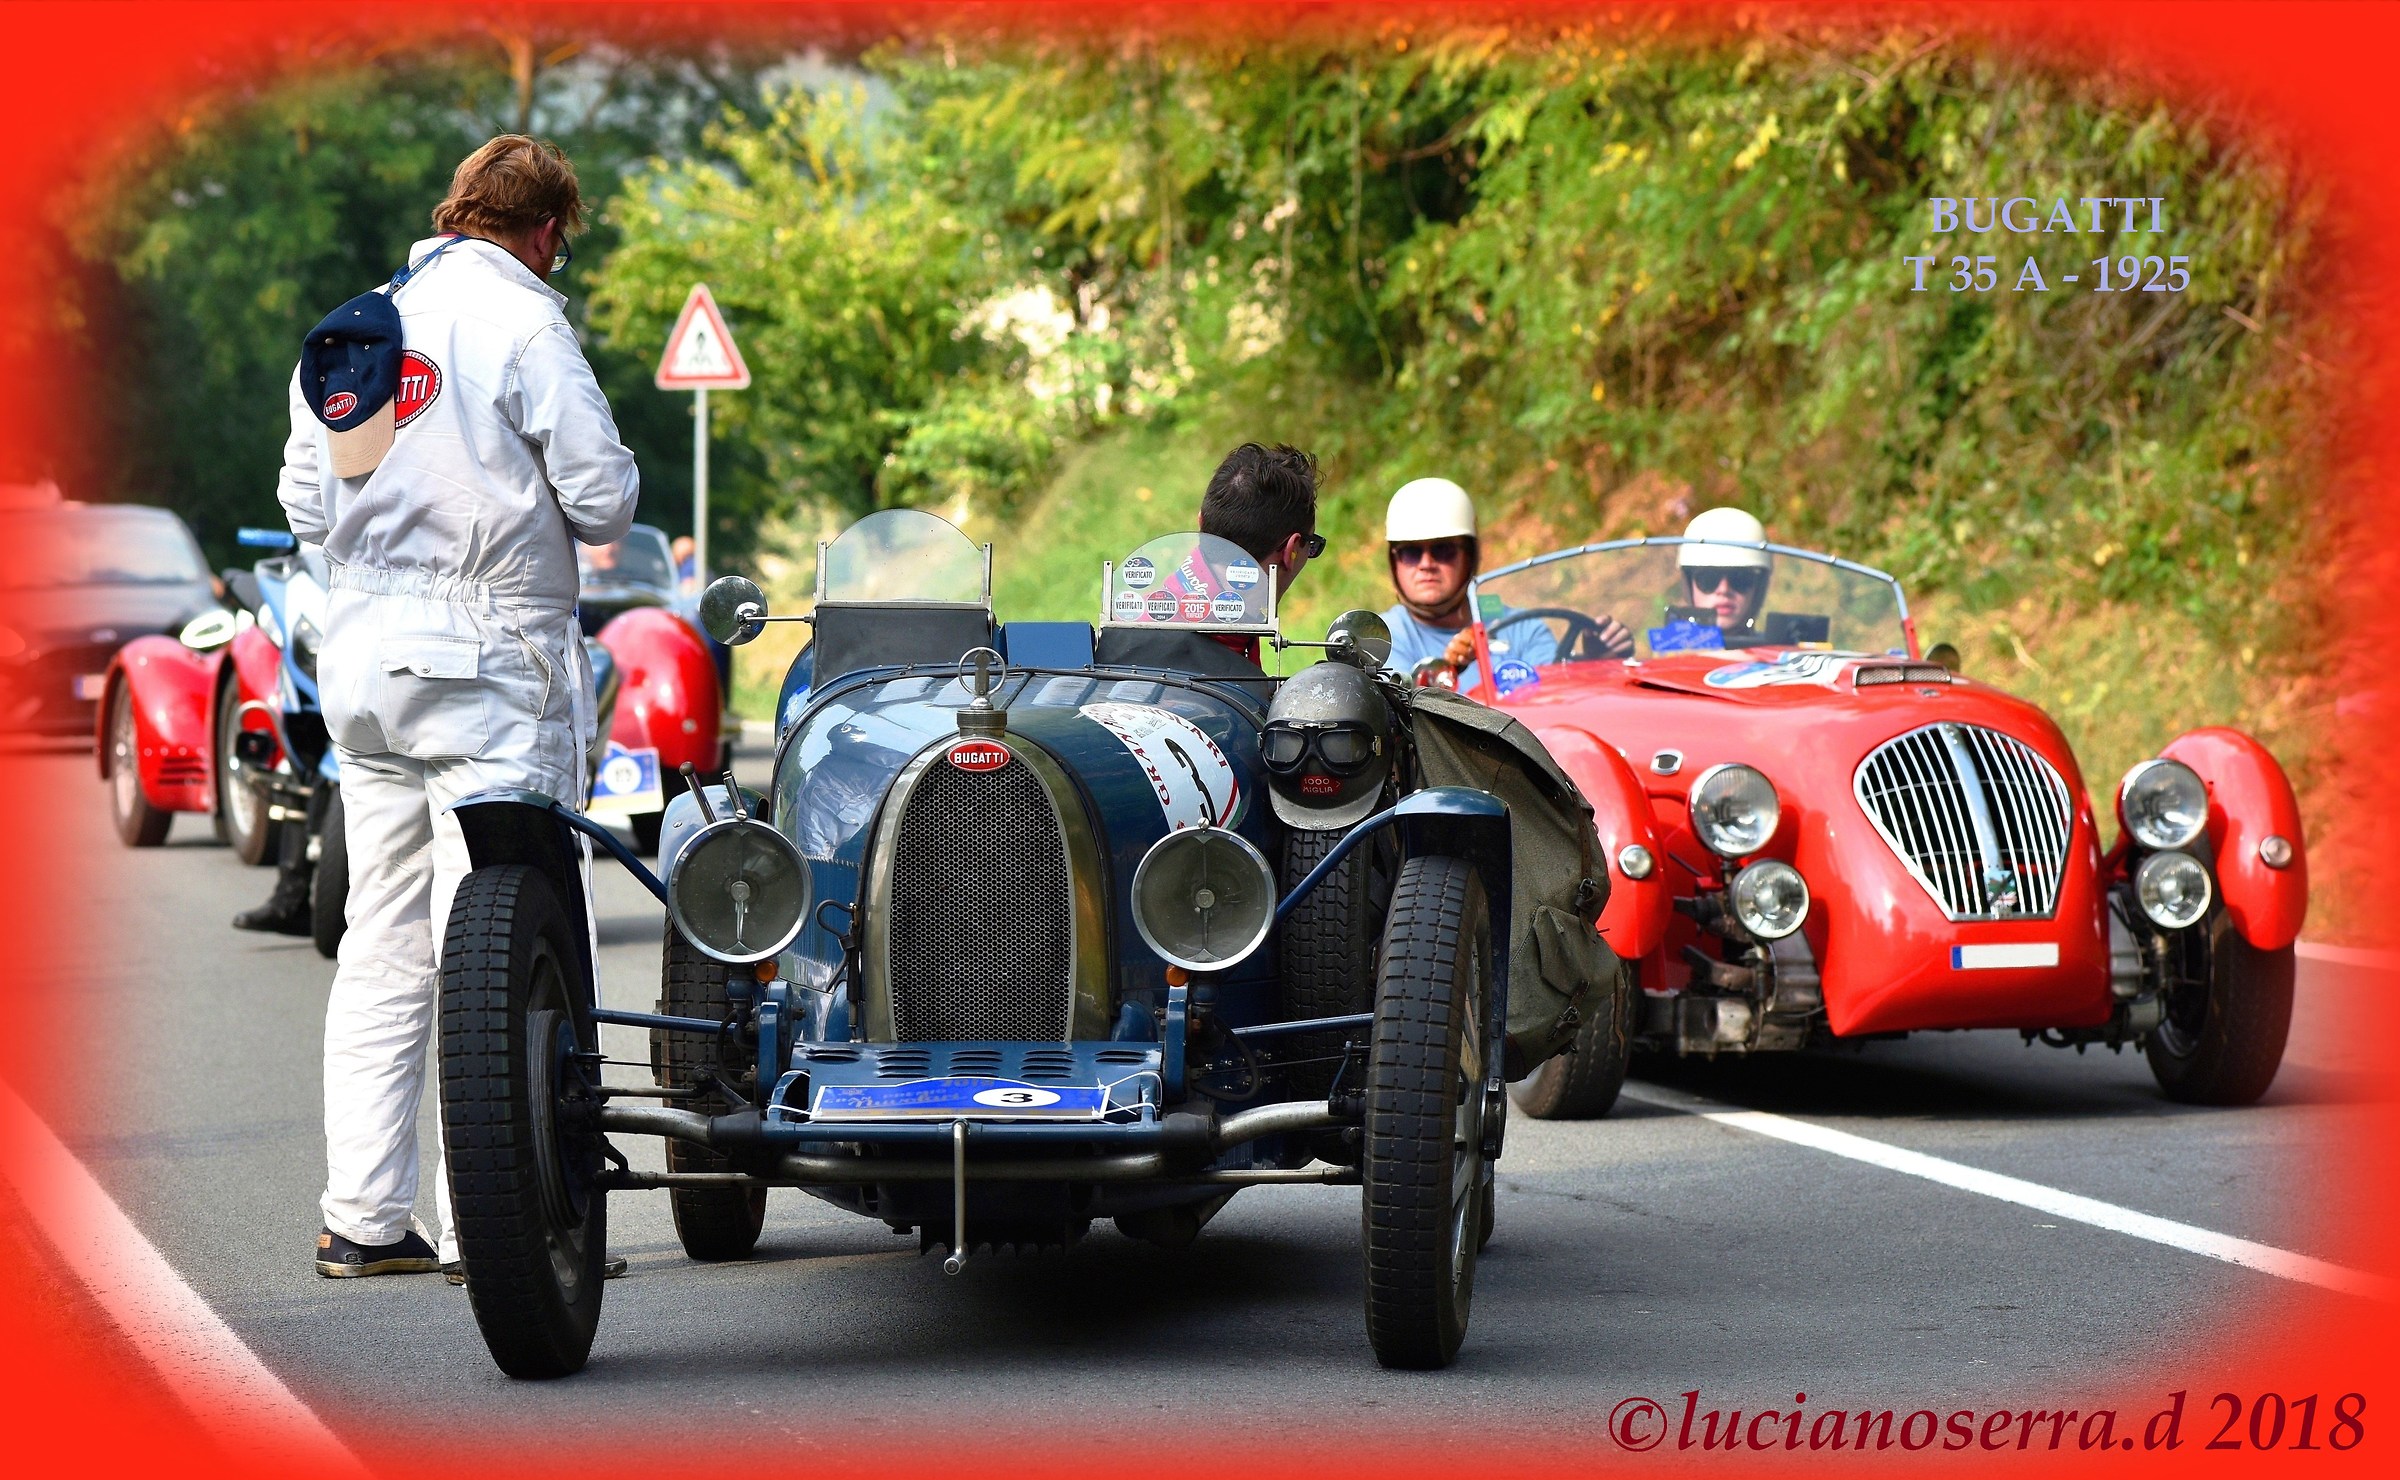 Bugatti Type 35 A-1925...